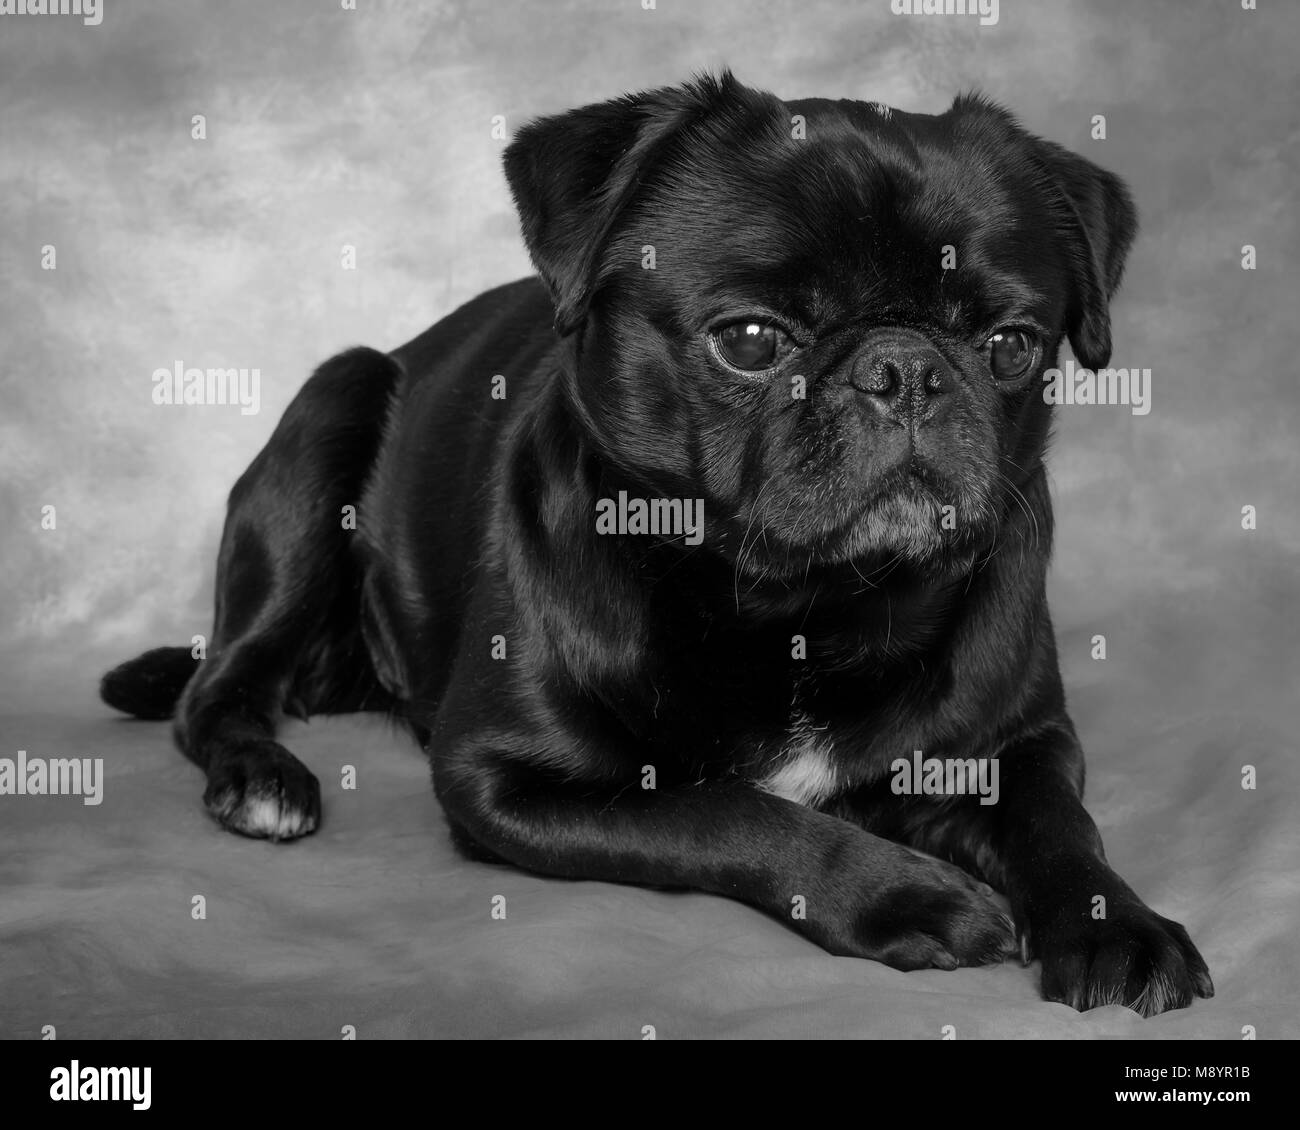 Schwarz & Weiß pet portrait Fotografie, hundeportrait, pug. Studio Fotoshooting für Haustiere, Hund, Fotografie, der beste Freund des Menschen, treu. Stockfoto